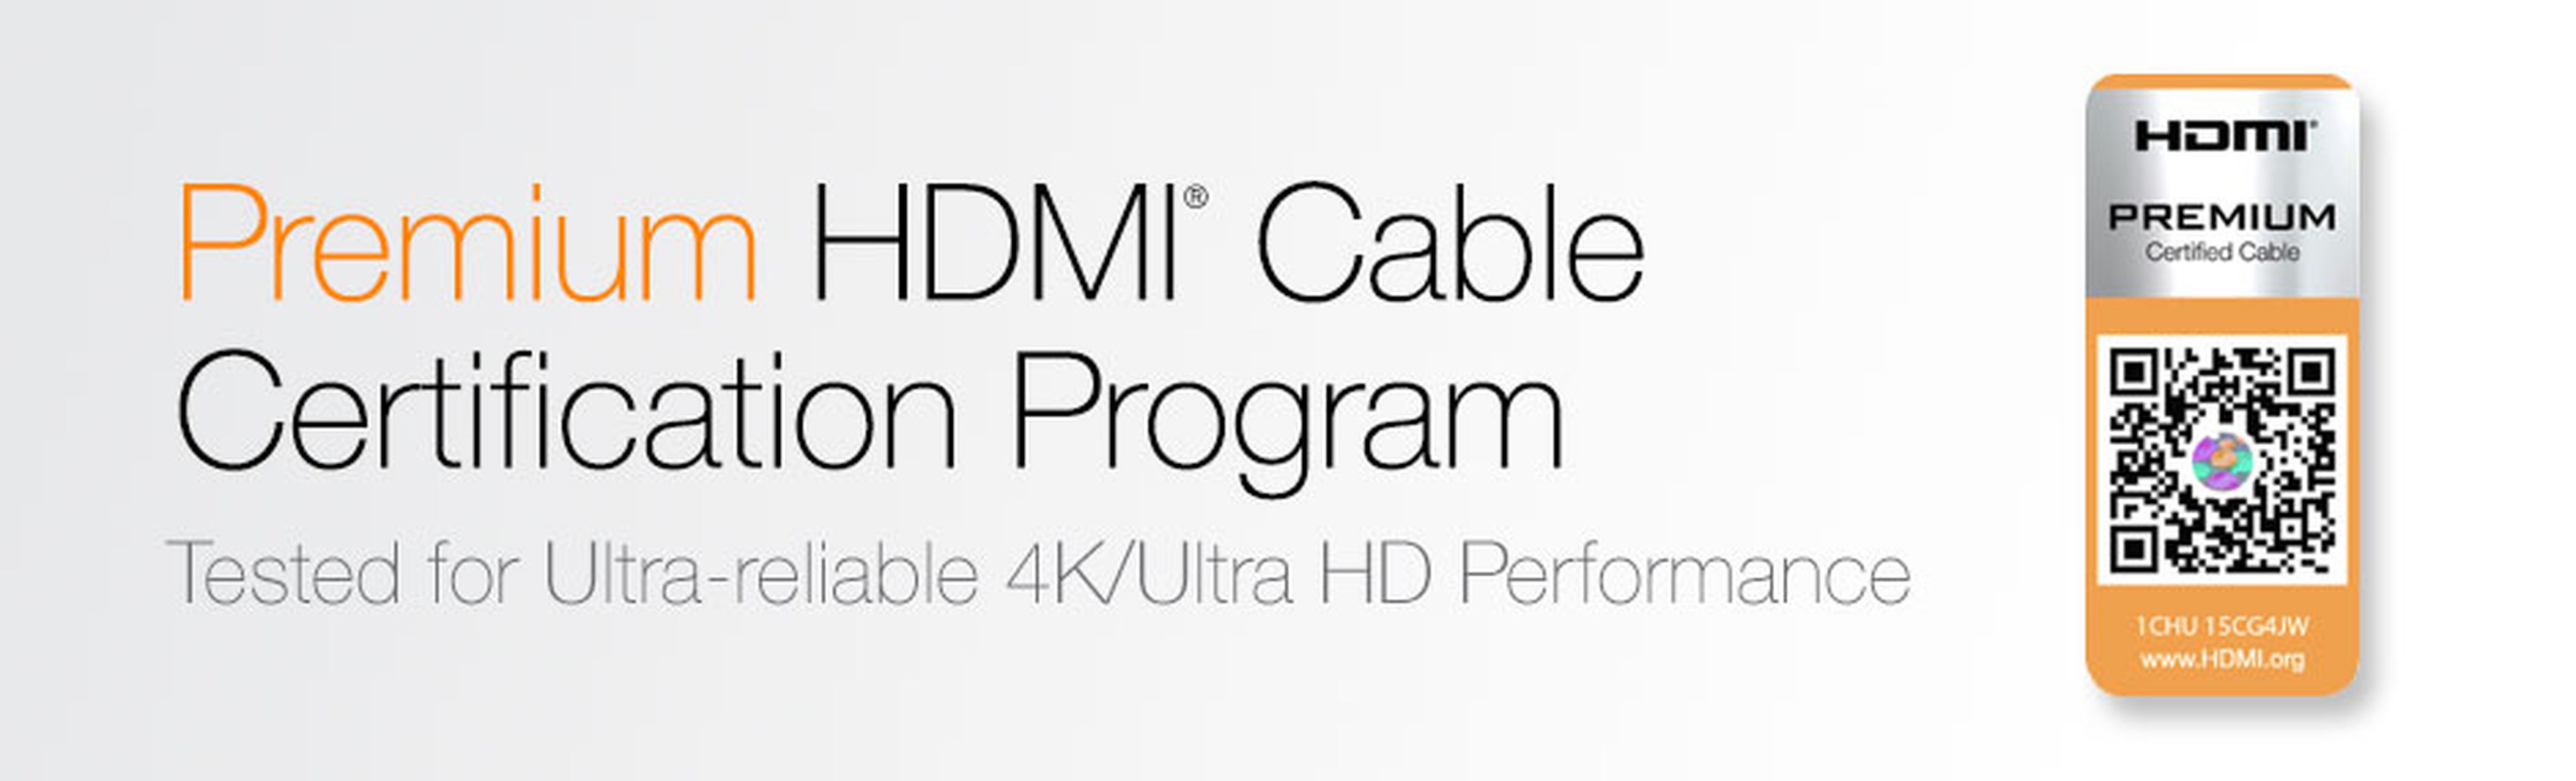 Llega el cable HDMI Premium para aprovechar la resolución 4K